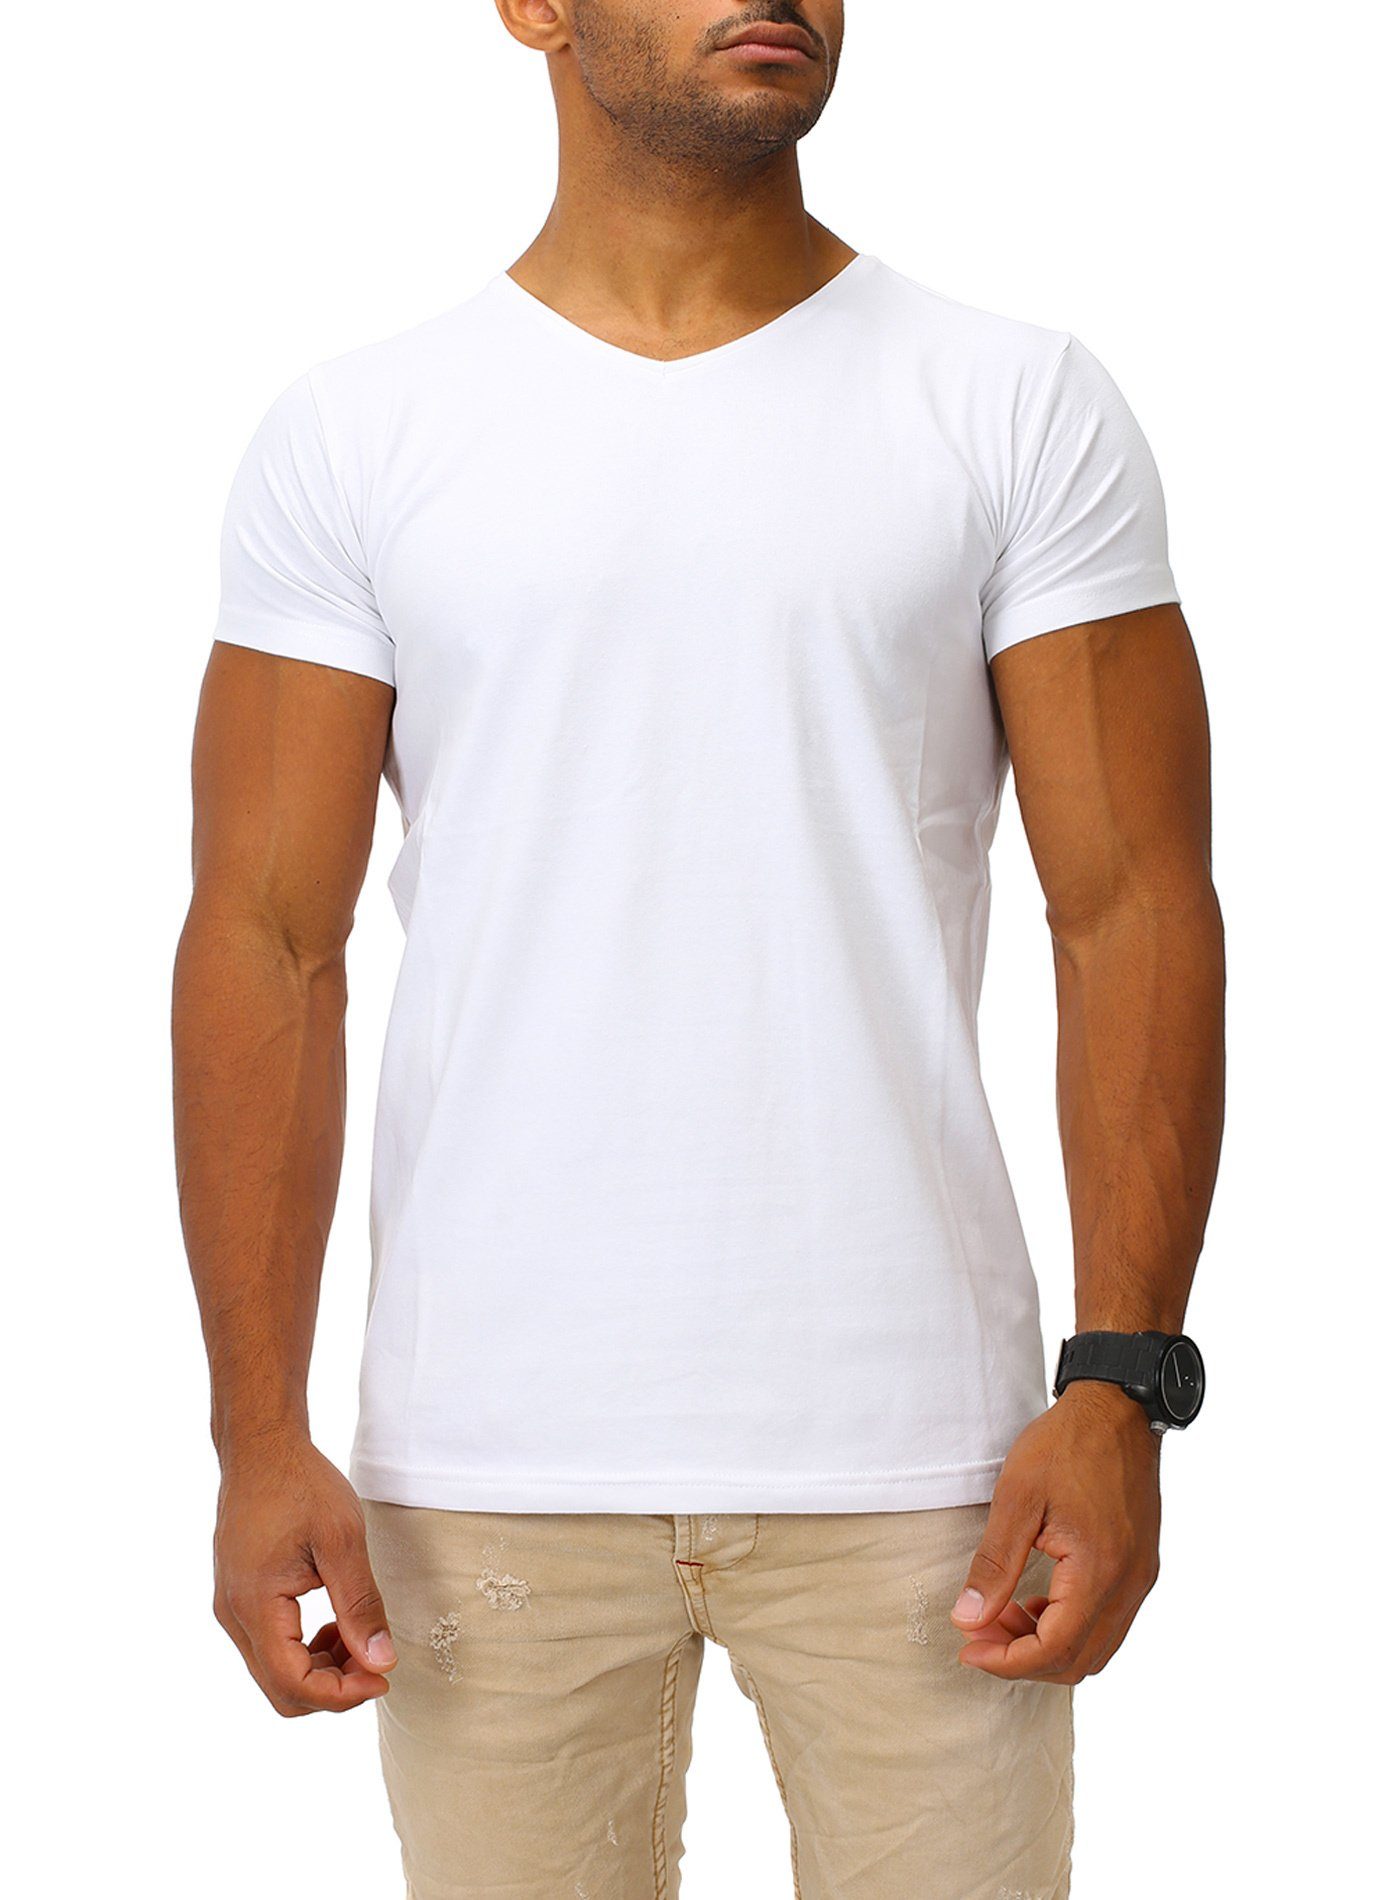 Joe Franks T-Shirt HIGH mit hohem V-Ausschnitt white